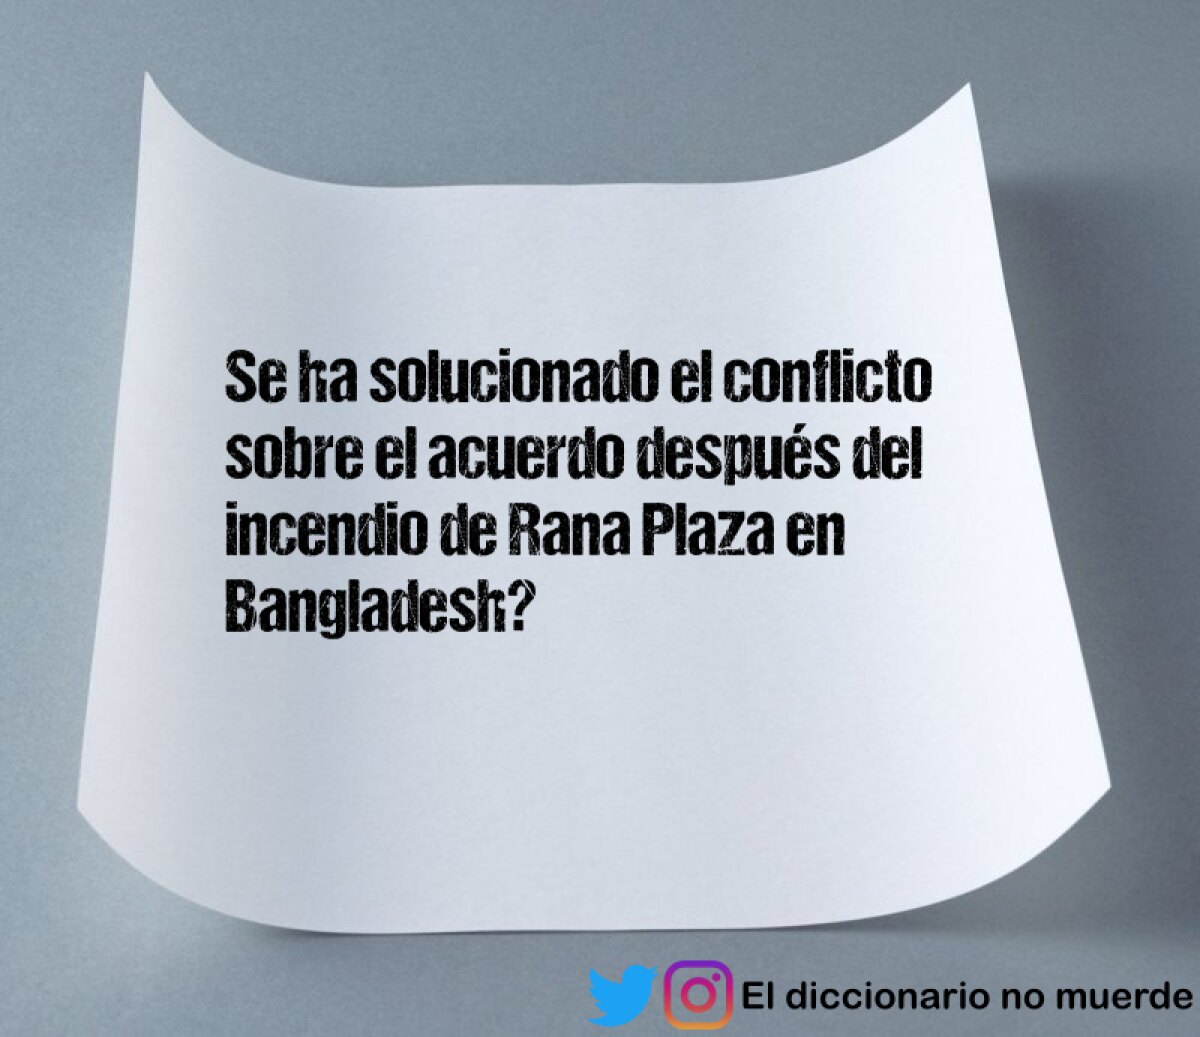 Se ha solucionado el conflicto sobre el acuerdo después del incendio de Rana Plaza en Bangladesh?